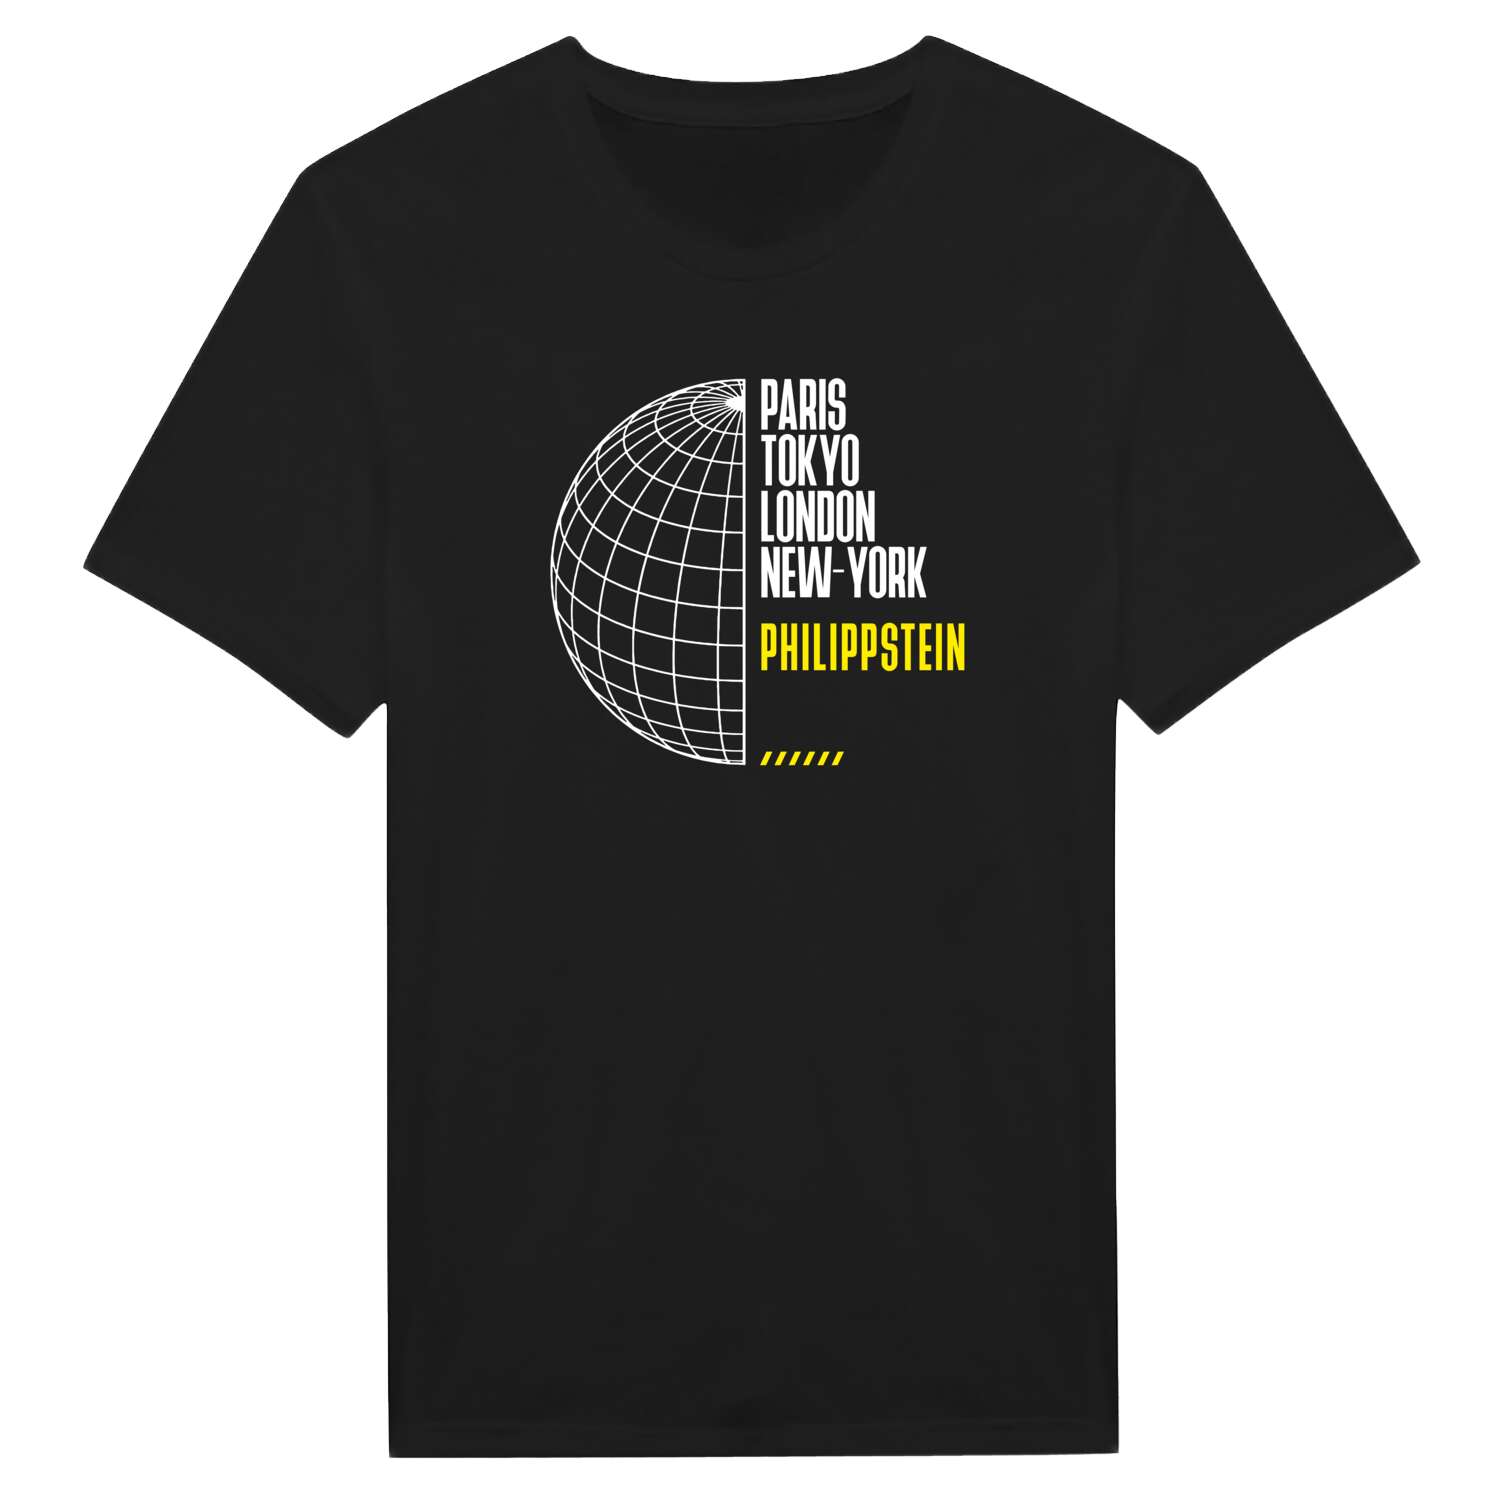 Philippstein T-Shirt »Paris Tokyo London«